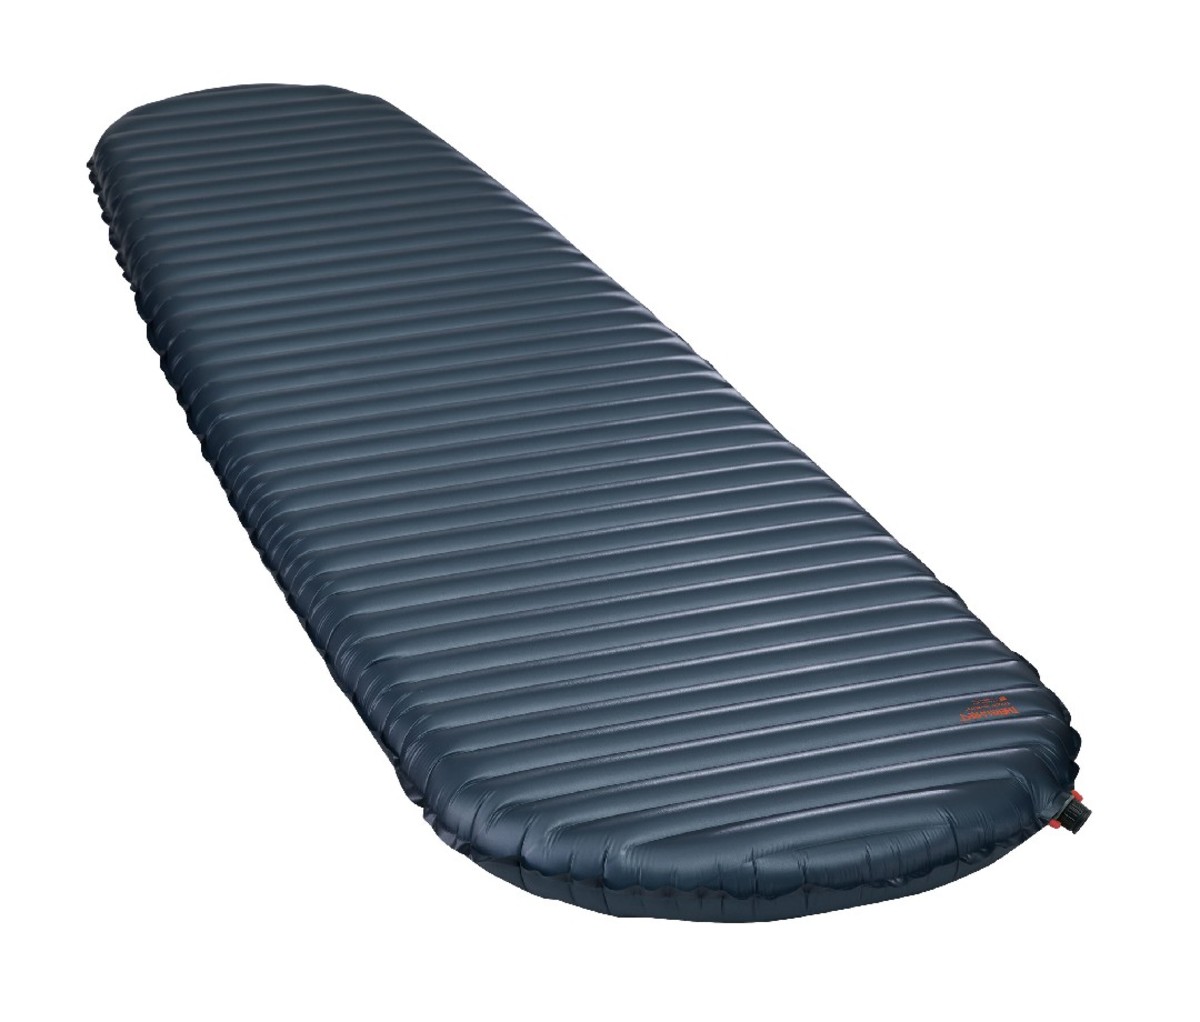 Therm-a-Rest NeoAir UberLite sleeping mat